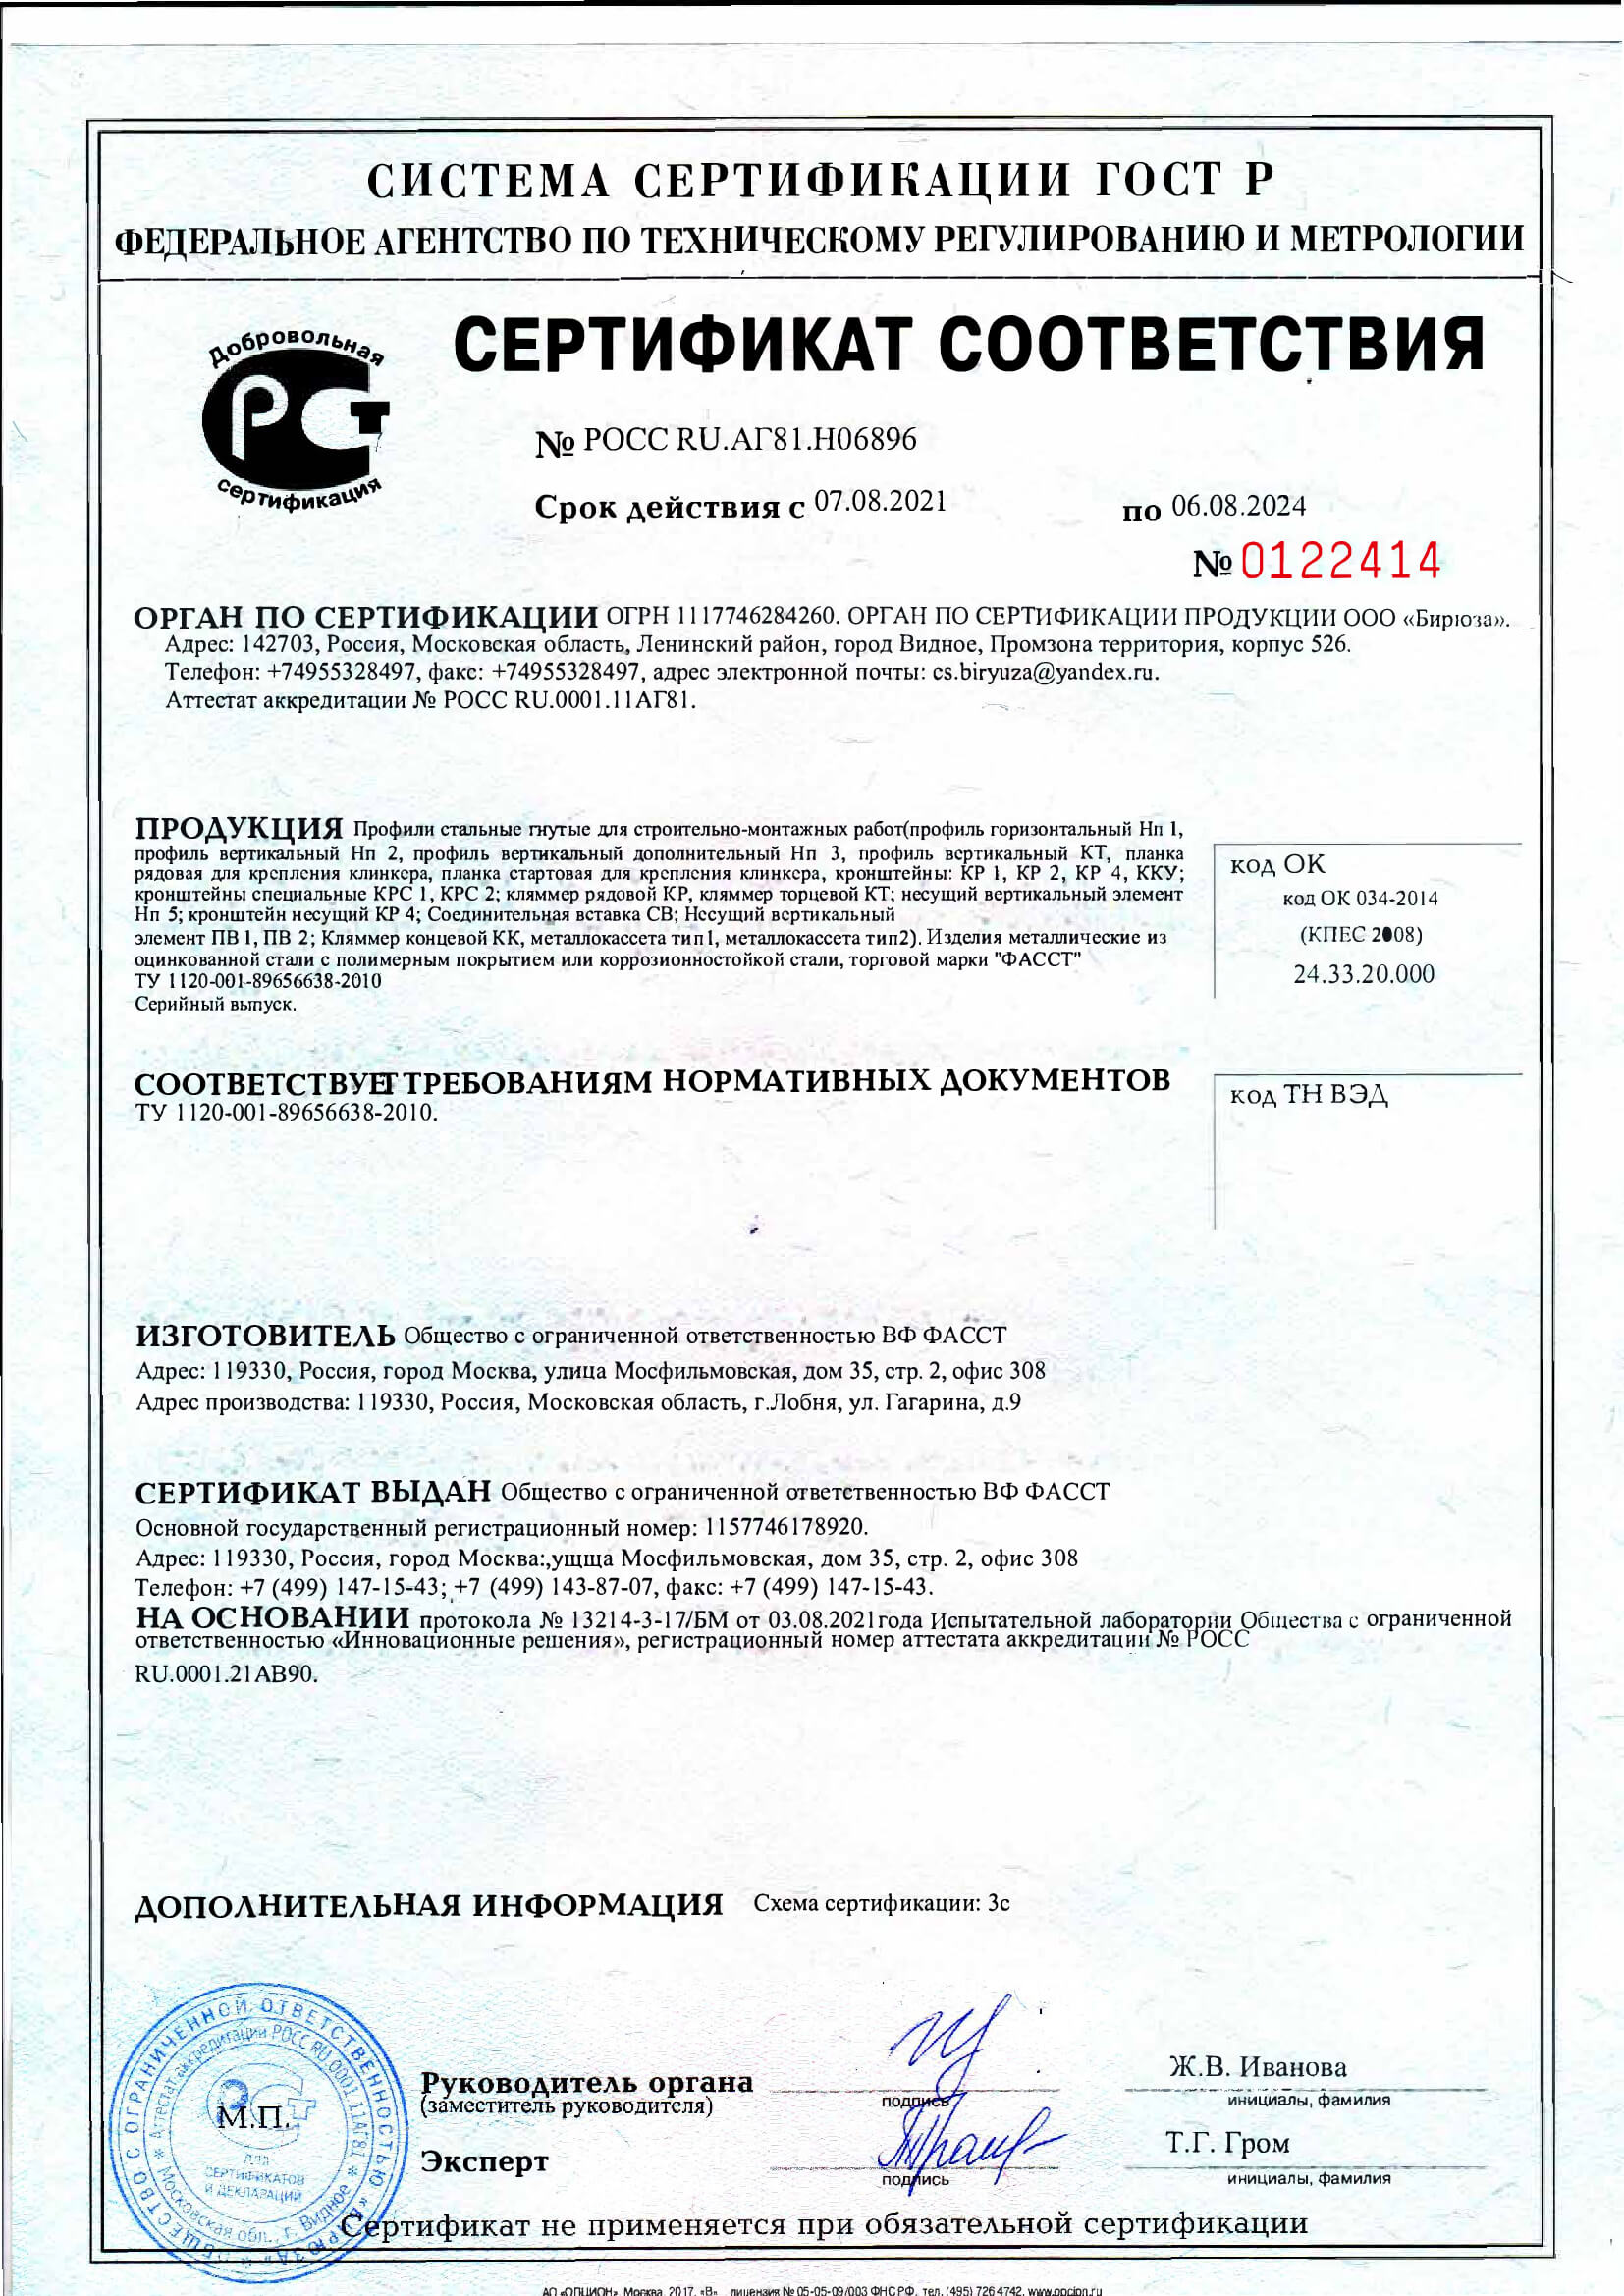  Сертификат соответствия ГОСТу